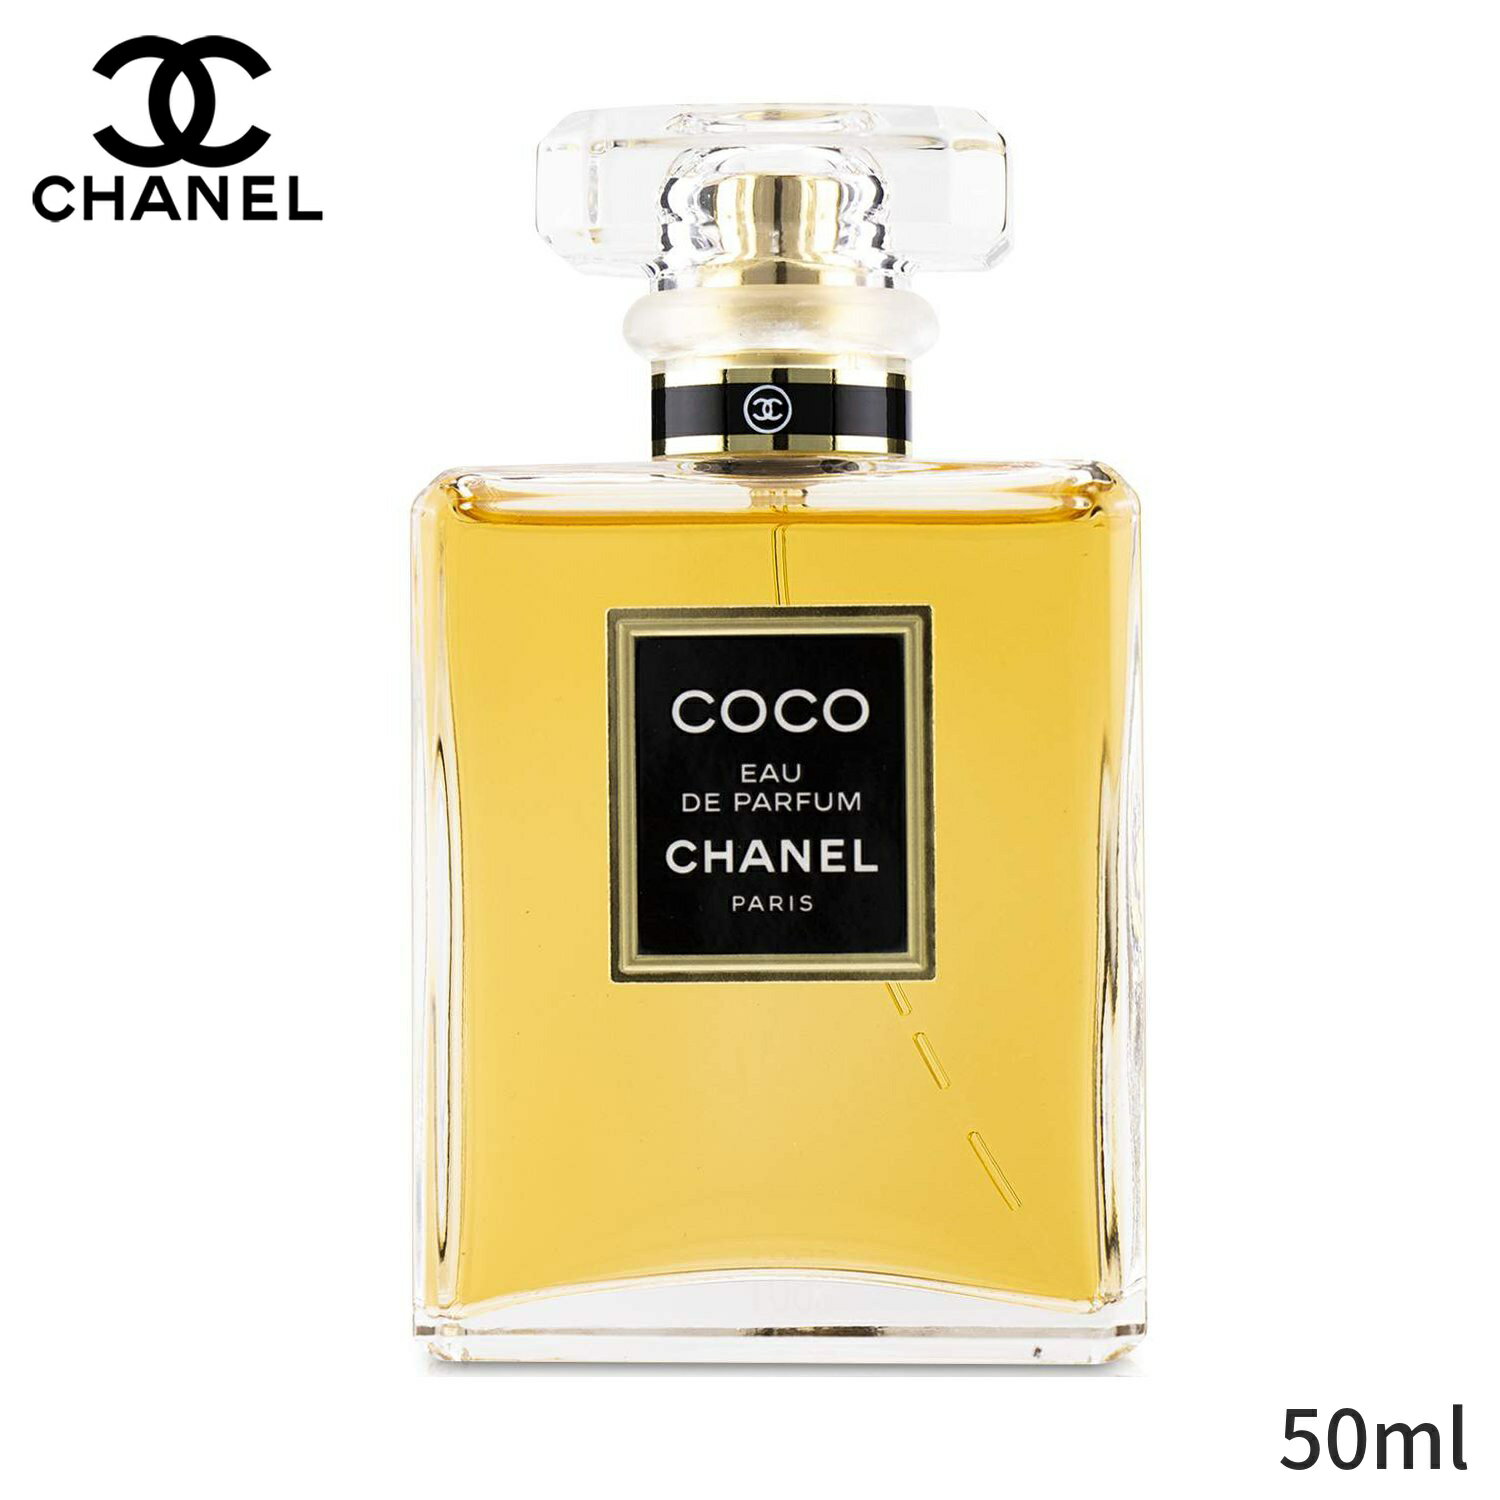 シャネル 香水 Chanel ココ オードパフュームスプレー 50ml レディース 女性用 フレグラ ...